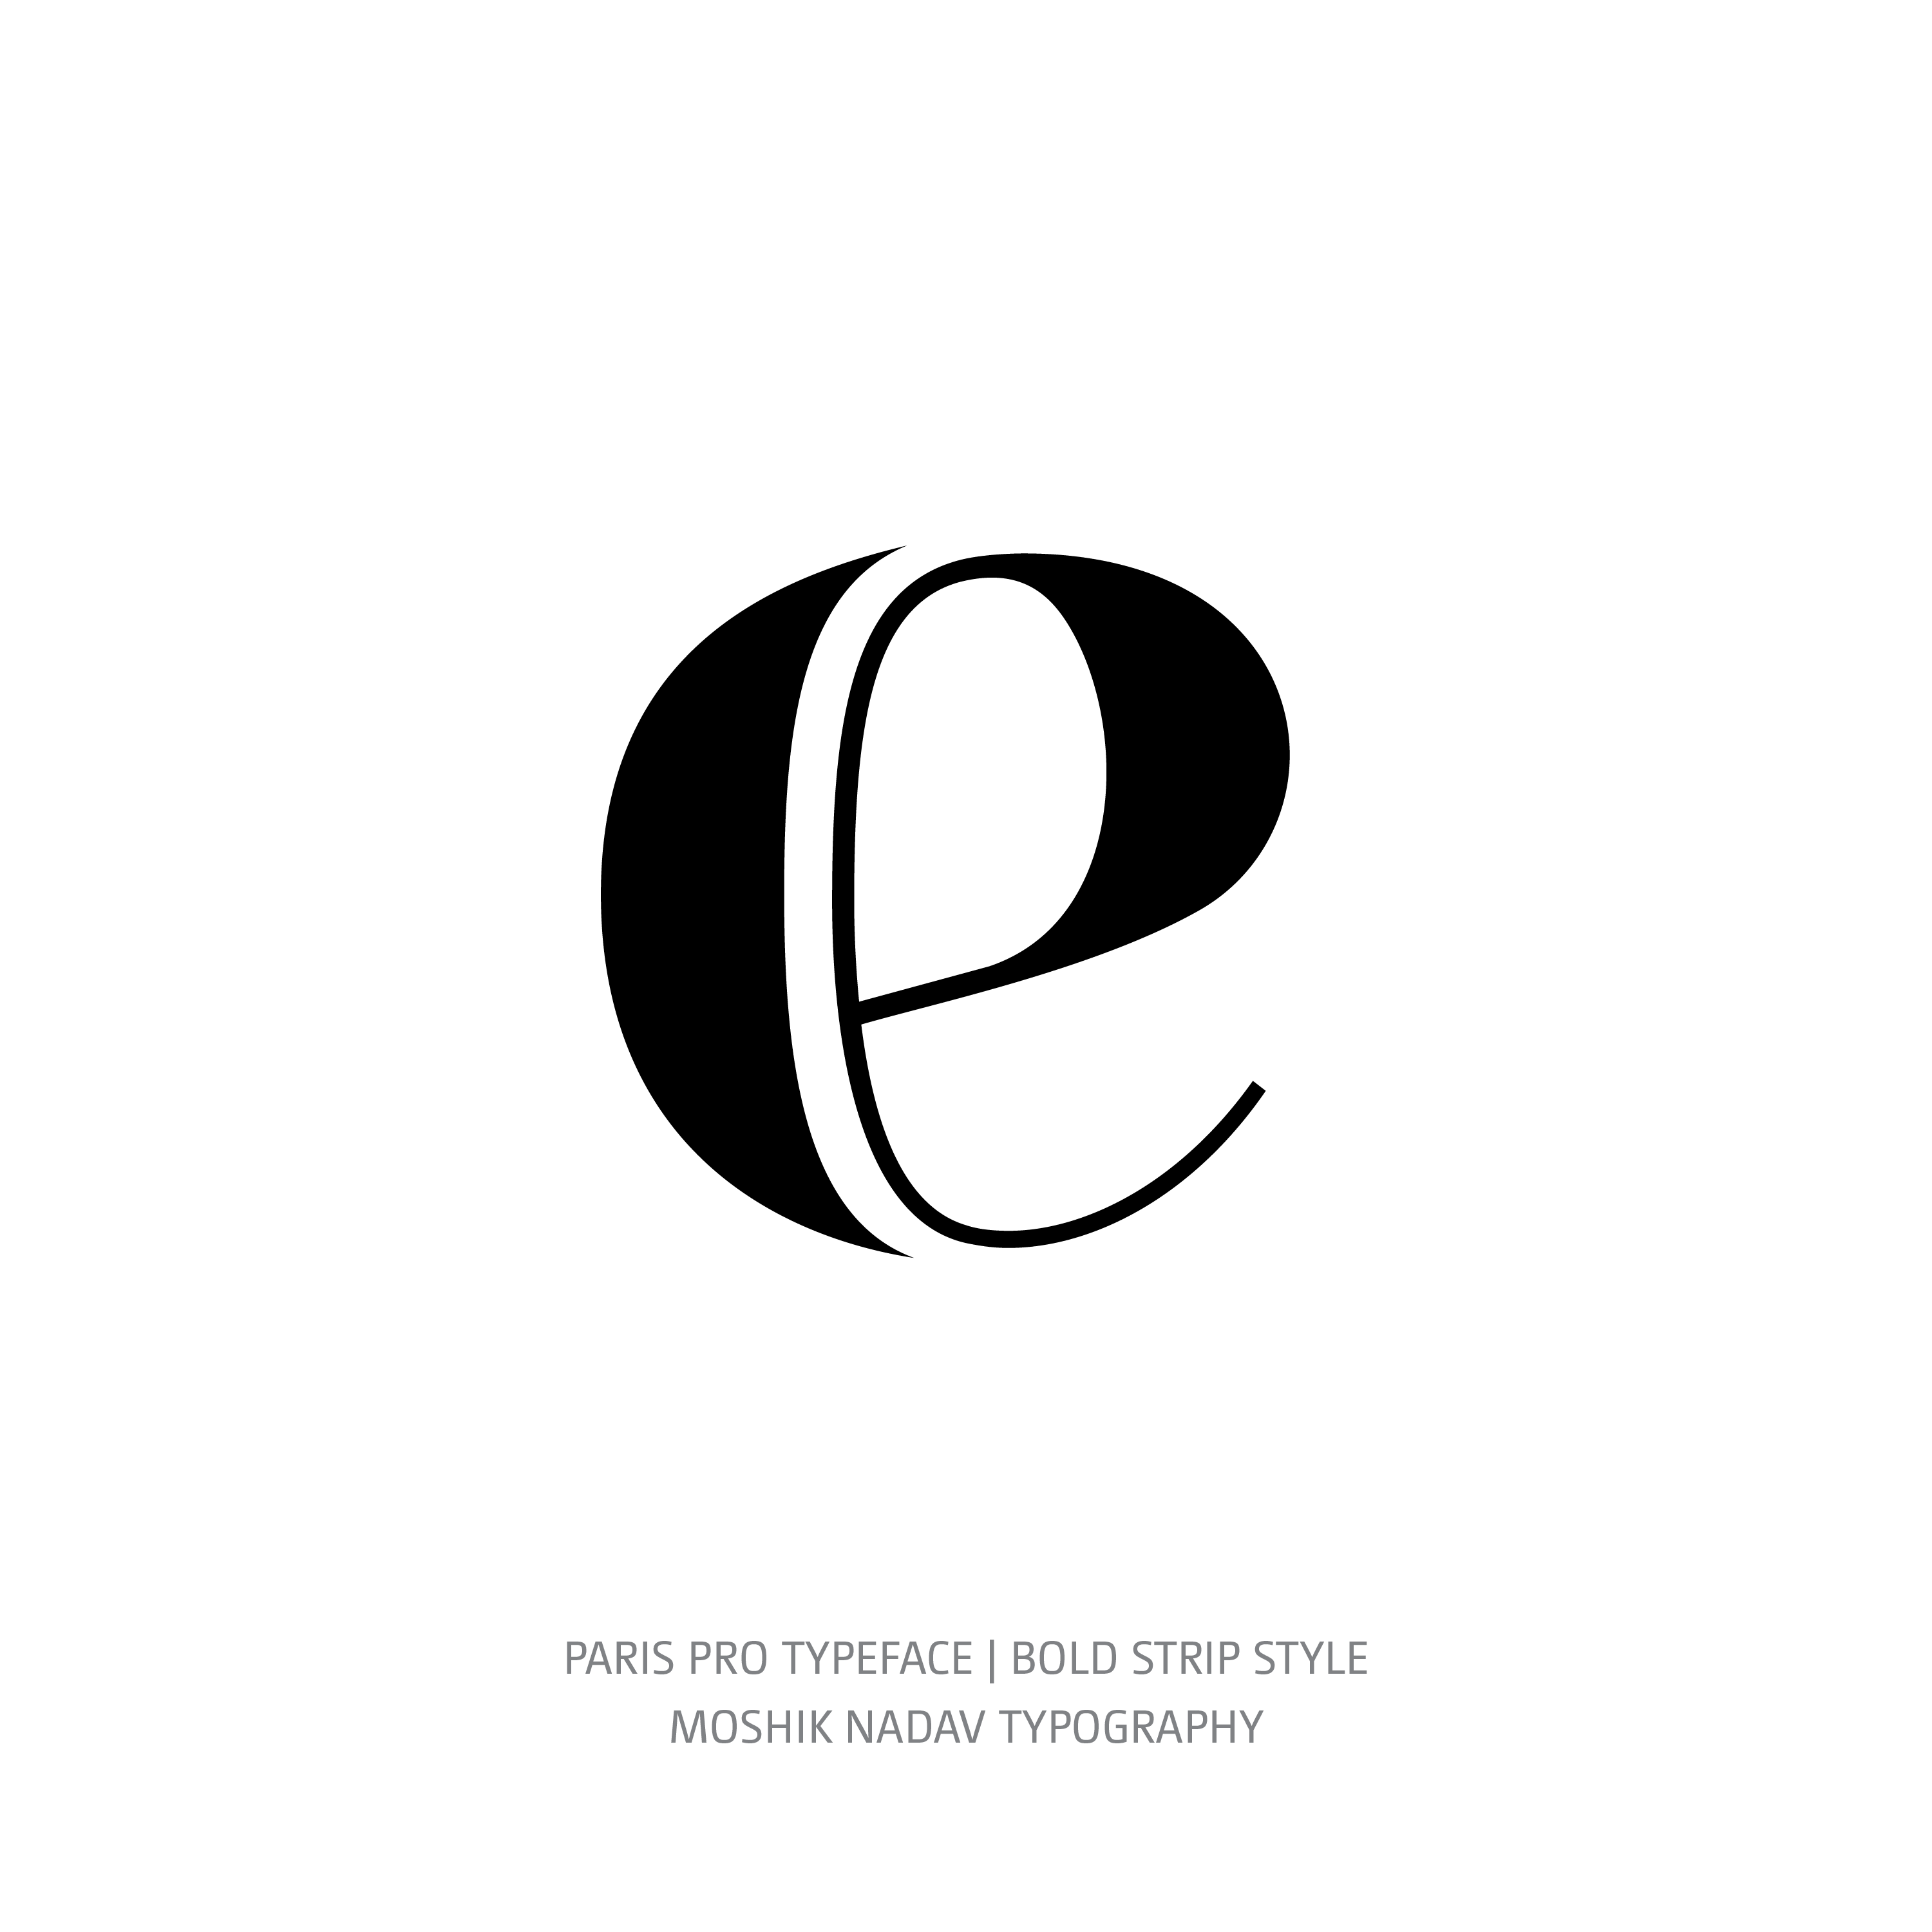 Paris Pro Typeface Bold Strip e